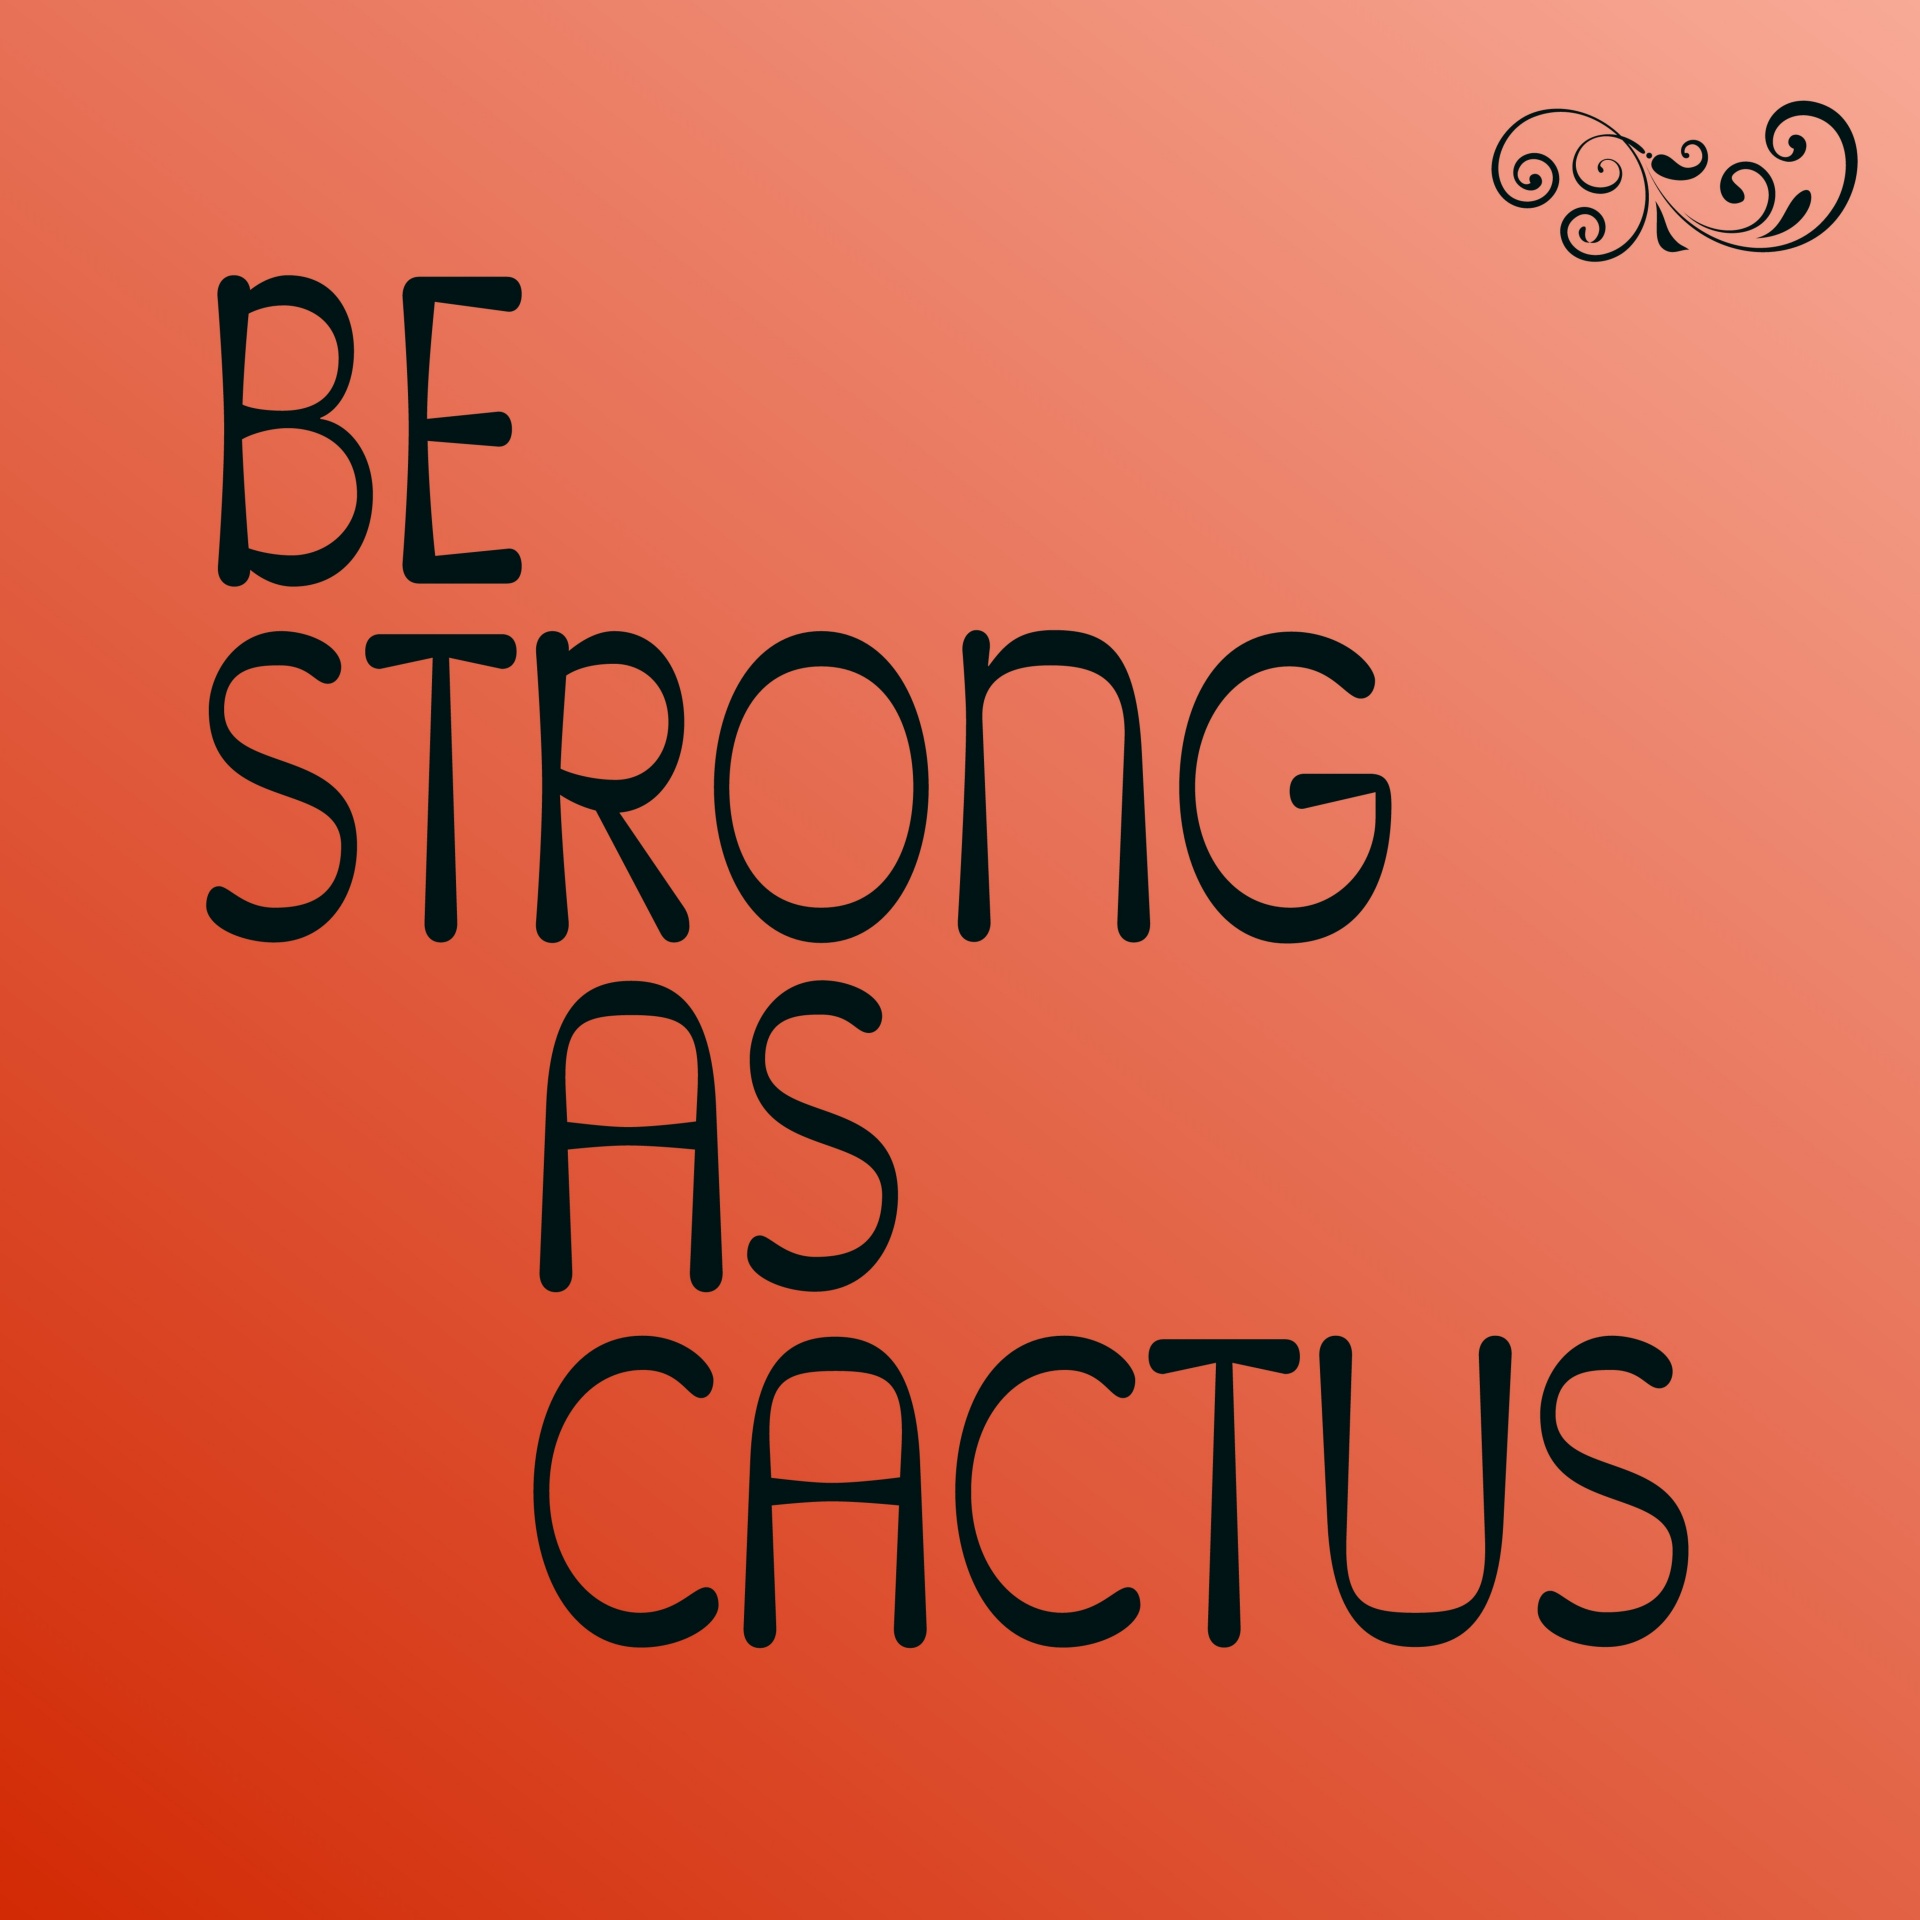 Wees sterk als cactus